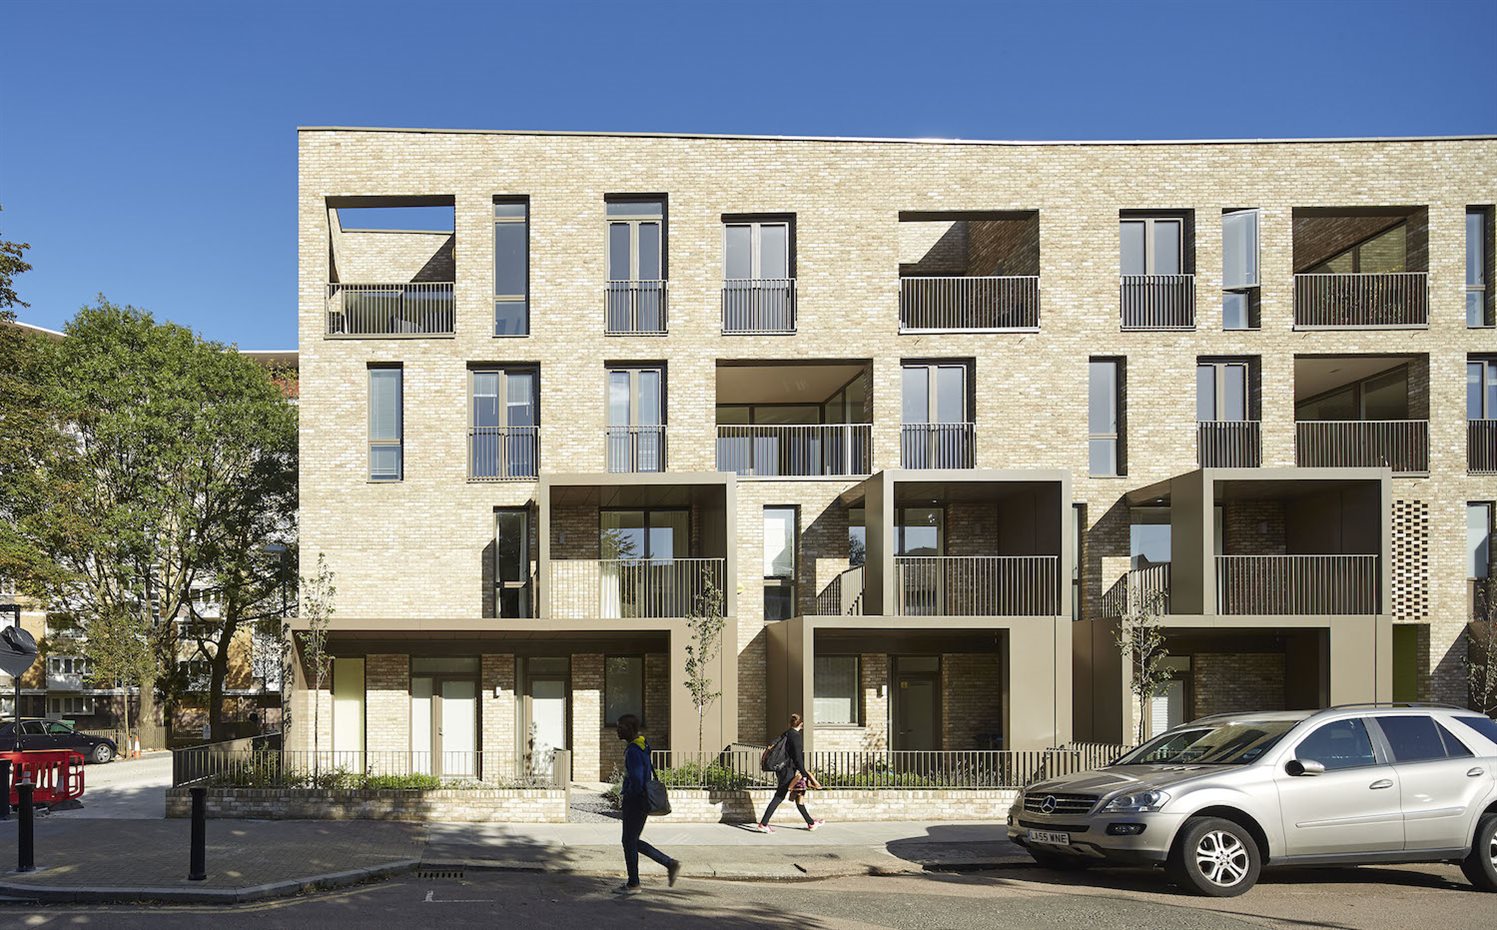 Ely Court (Londres), de Alison Brooks Architects